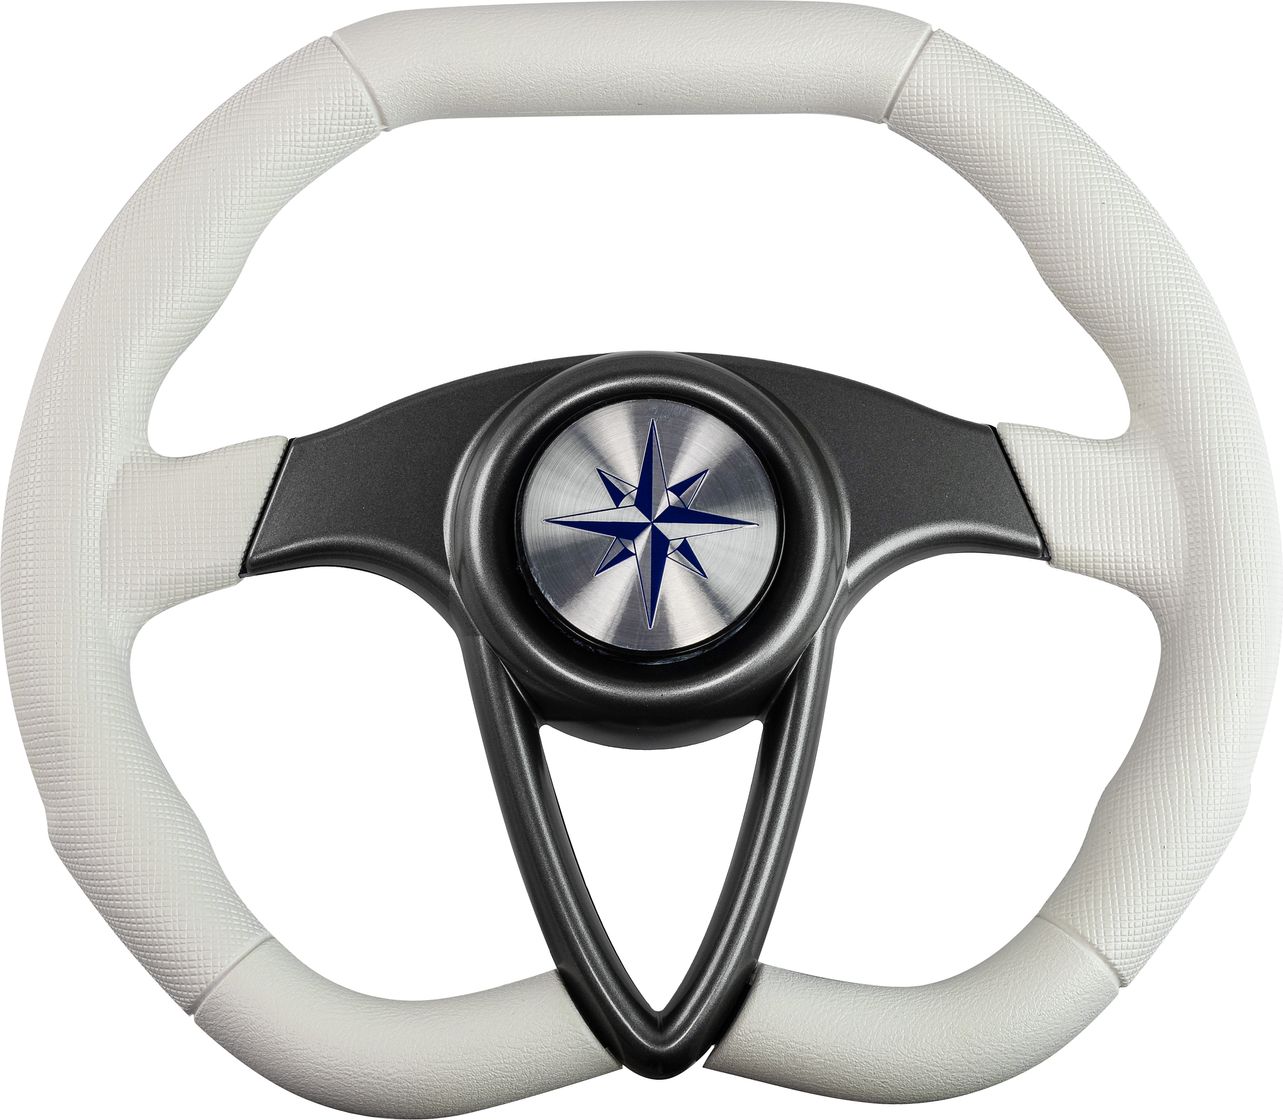 Рулевое колесо BARRACUDA обод белый, спицы серебряные д. 350 мм VN135002-08 рулевое колесо leader plast белый обод серебряные спицы д 360 мм vn8360 08